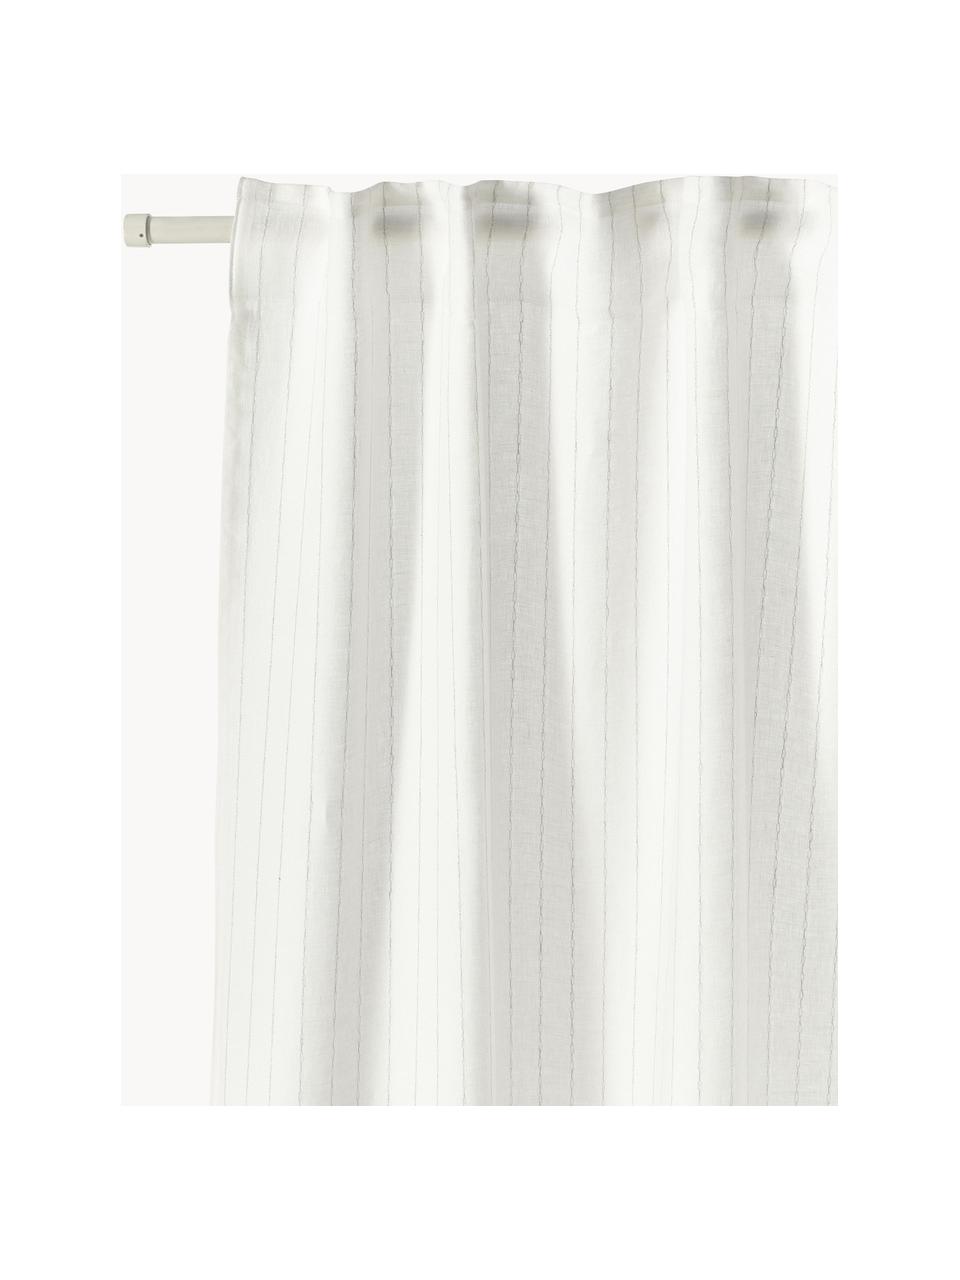 Cortinas semitransparente con multibanda Birch, 2 uds., 100% lino, Blanco, An 130 x L 260 cm